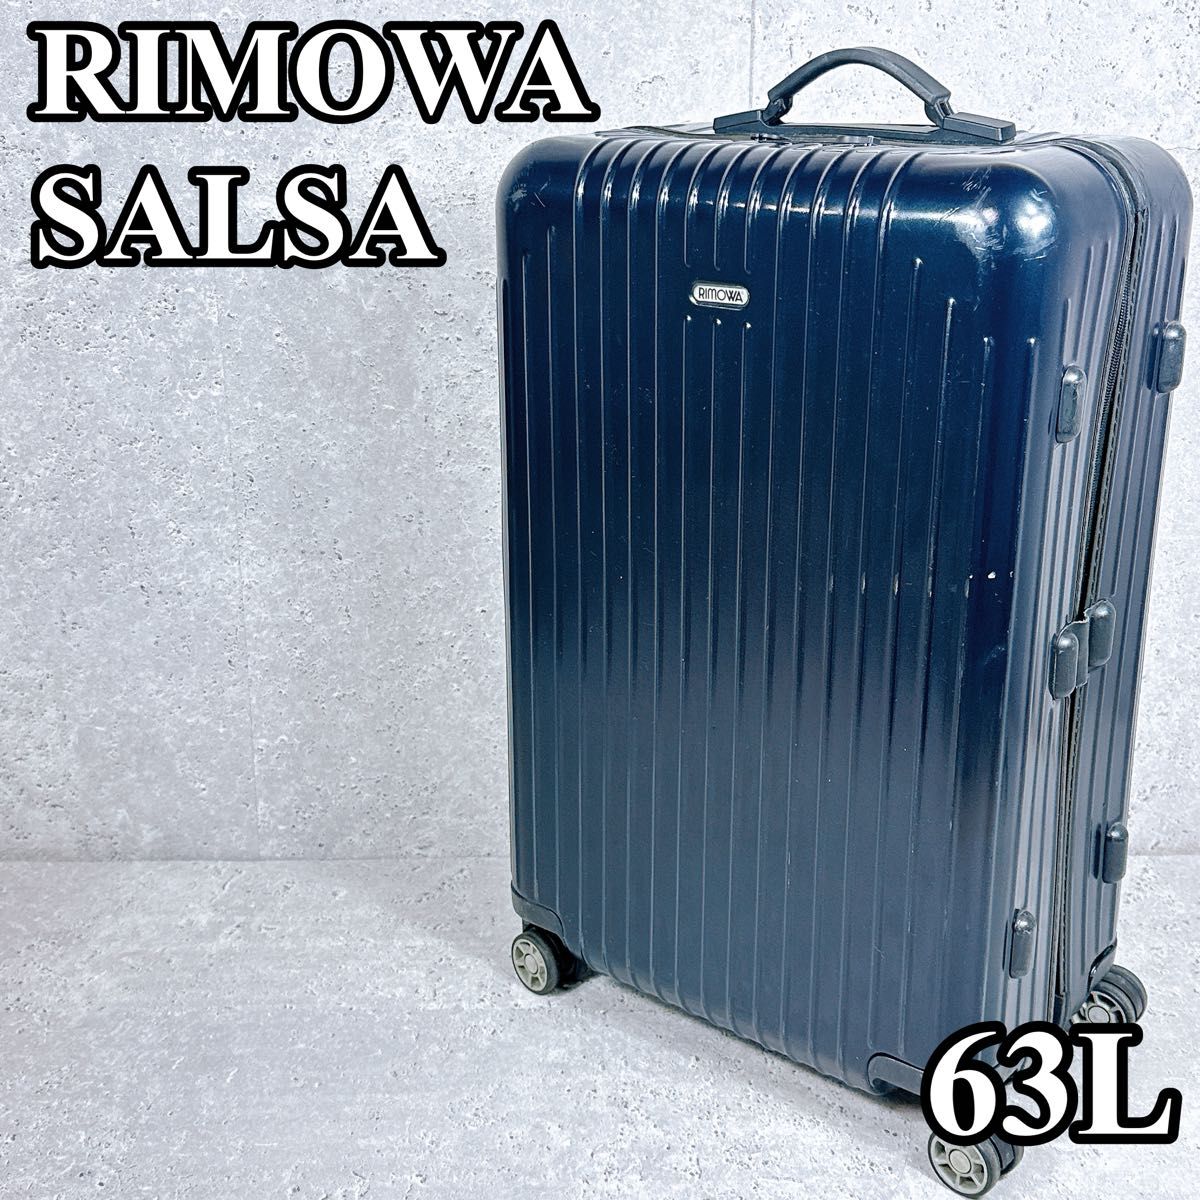 良品 リモワ サルサ エアー スーツケース キャリーバッグ 4輪 ネイビー RIMOWA リモア SALSA AIR 63L 